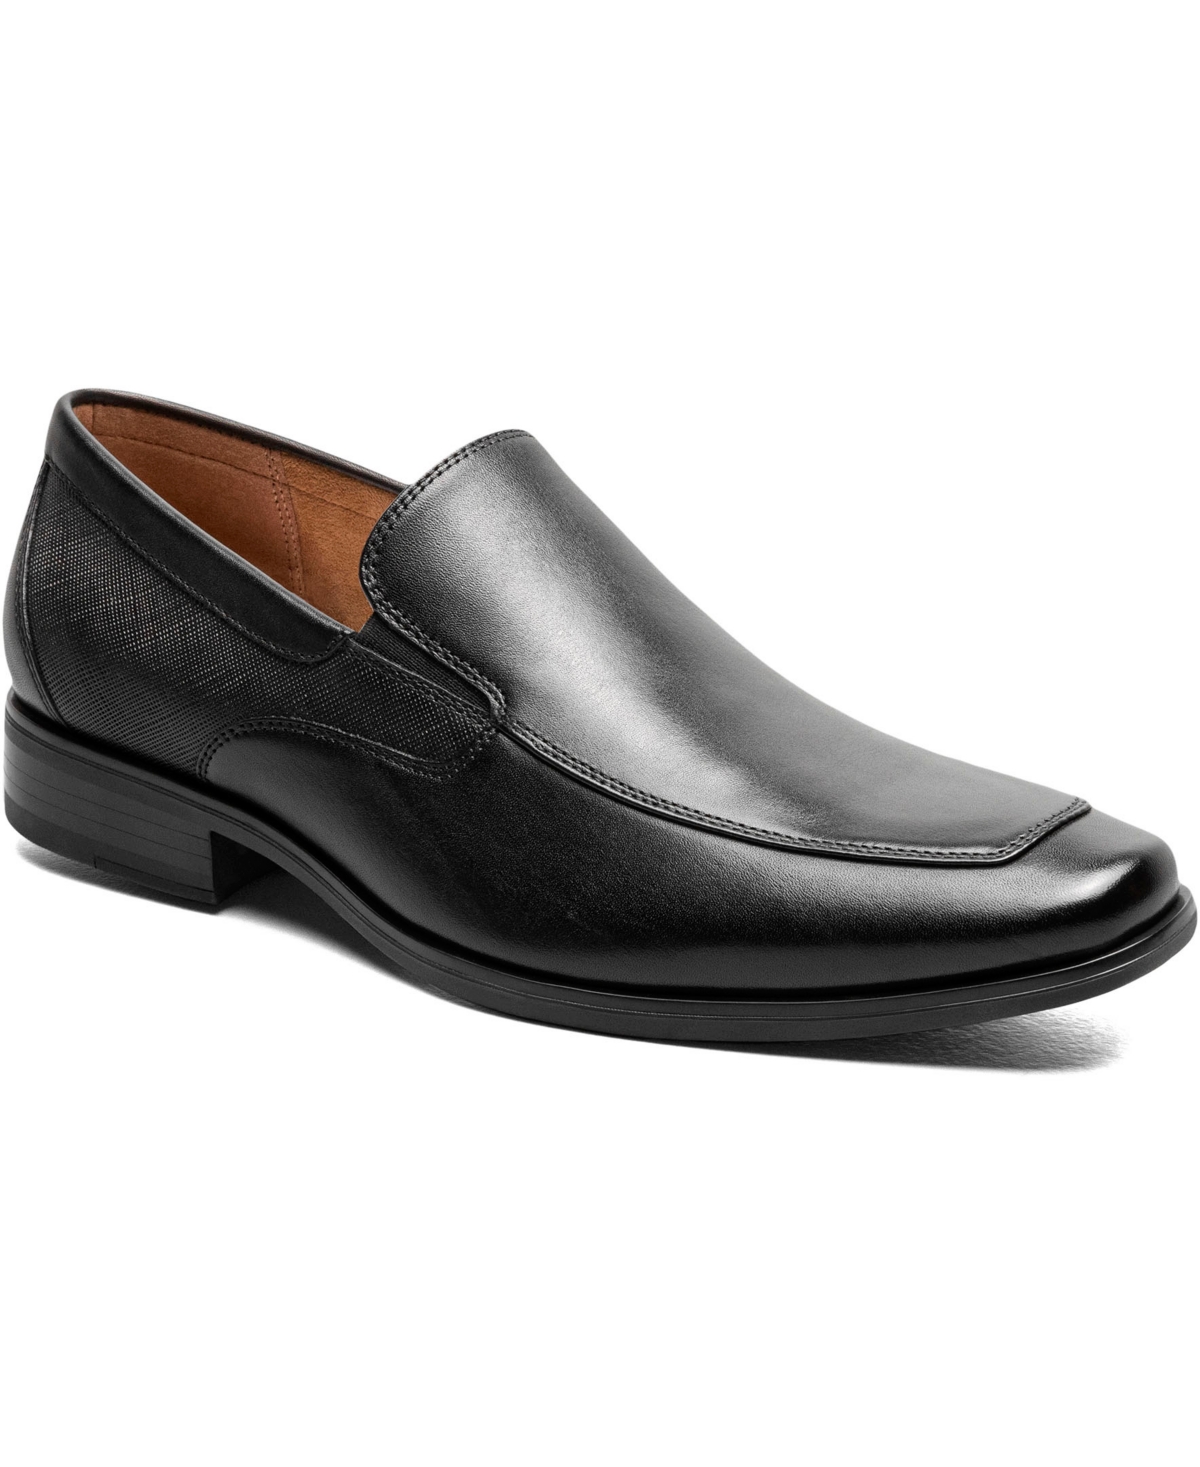 Men's Jackson Moc Toe Slip On Dress Shoes - Black